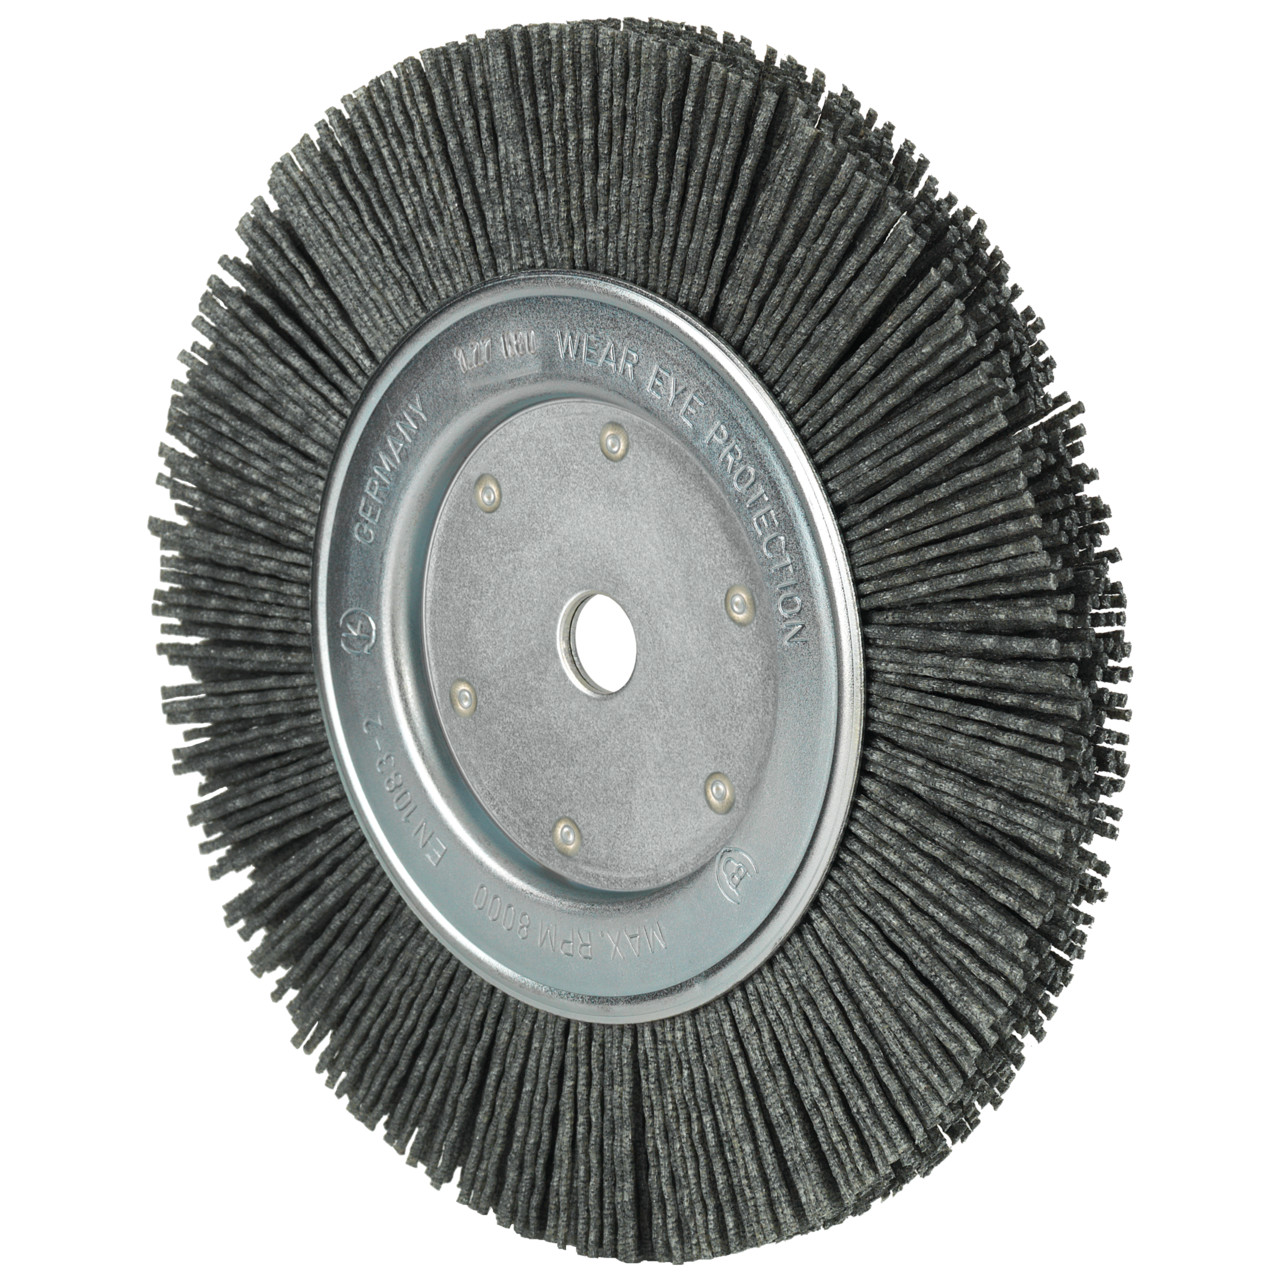 Tyrolit spazzole rotonde DxLxH 125x13x22x20 Per uso universale, forma: 1RDK - (spazzole rotonde), Art. 34043577